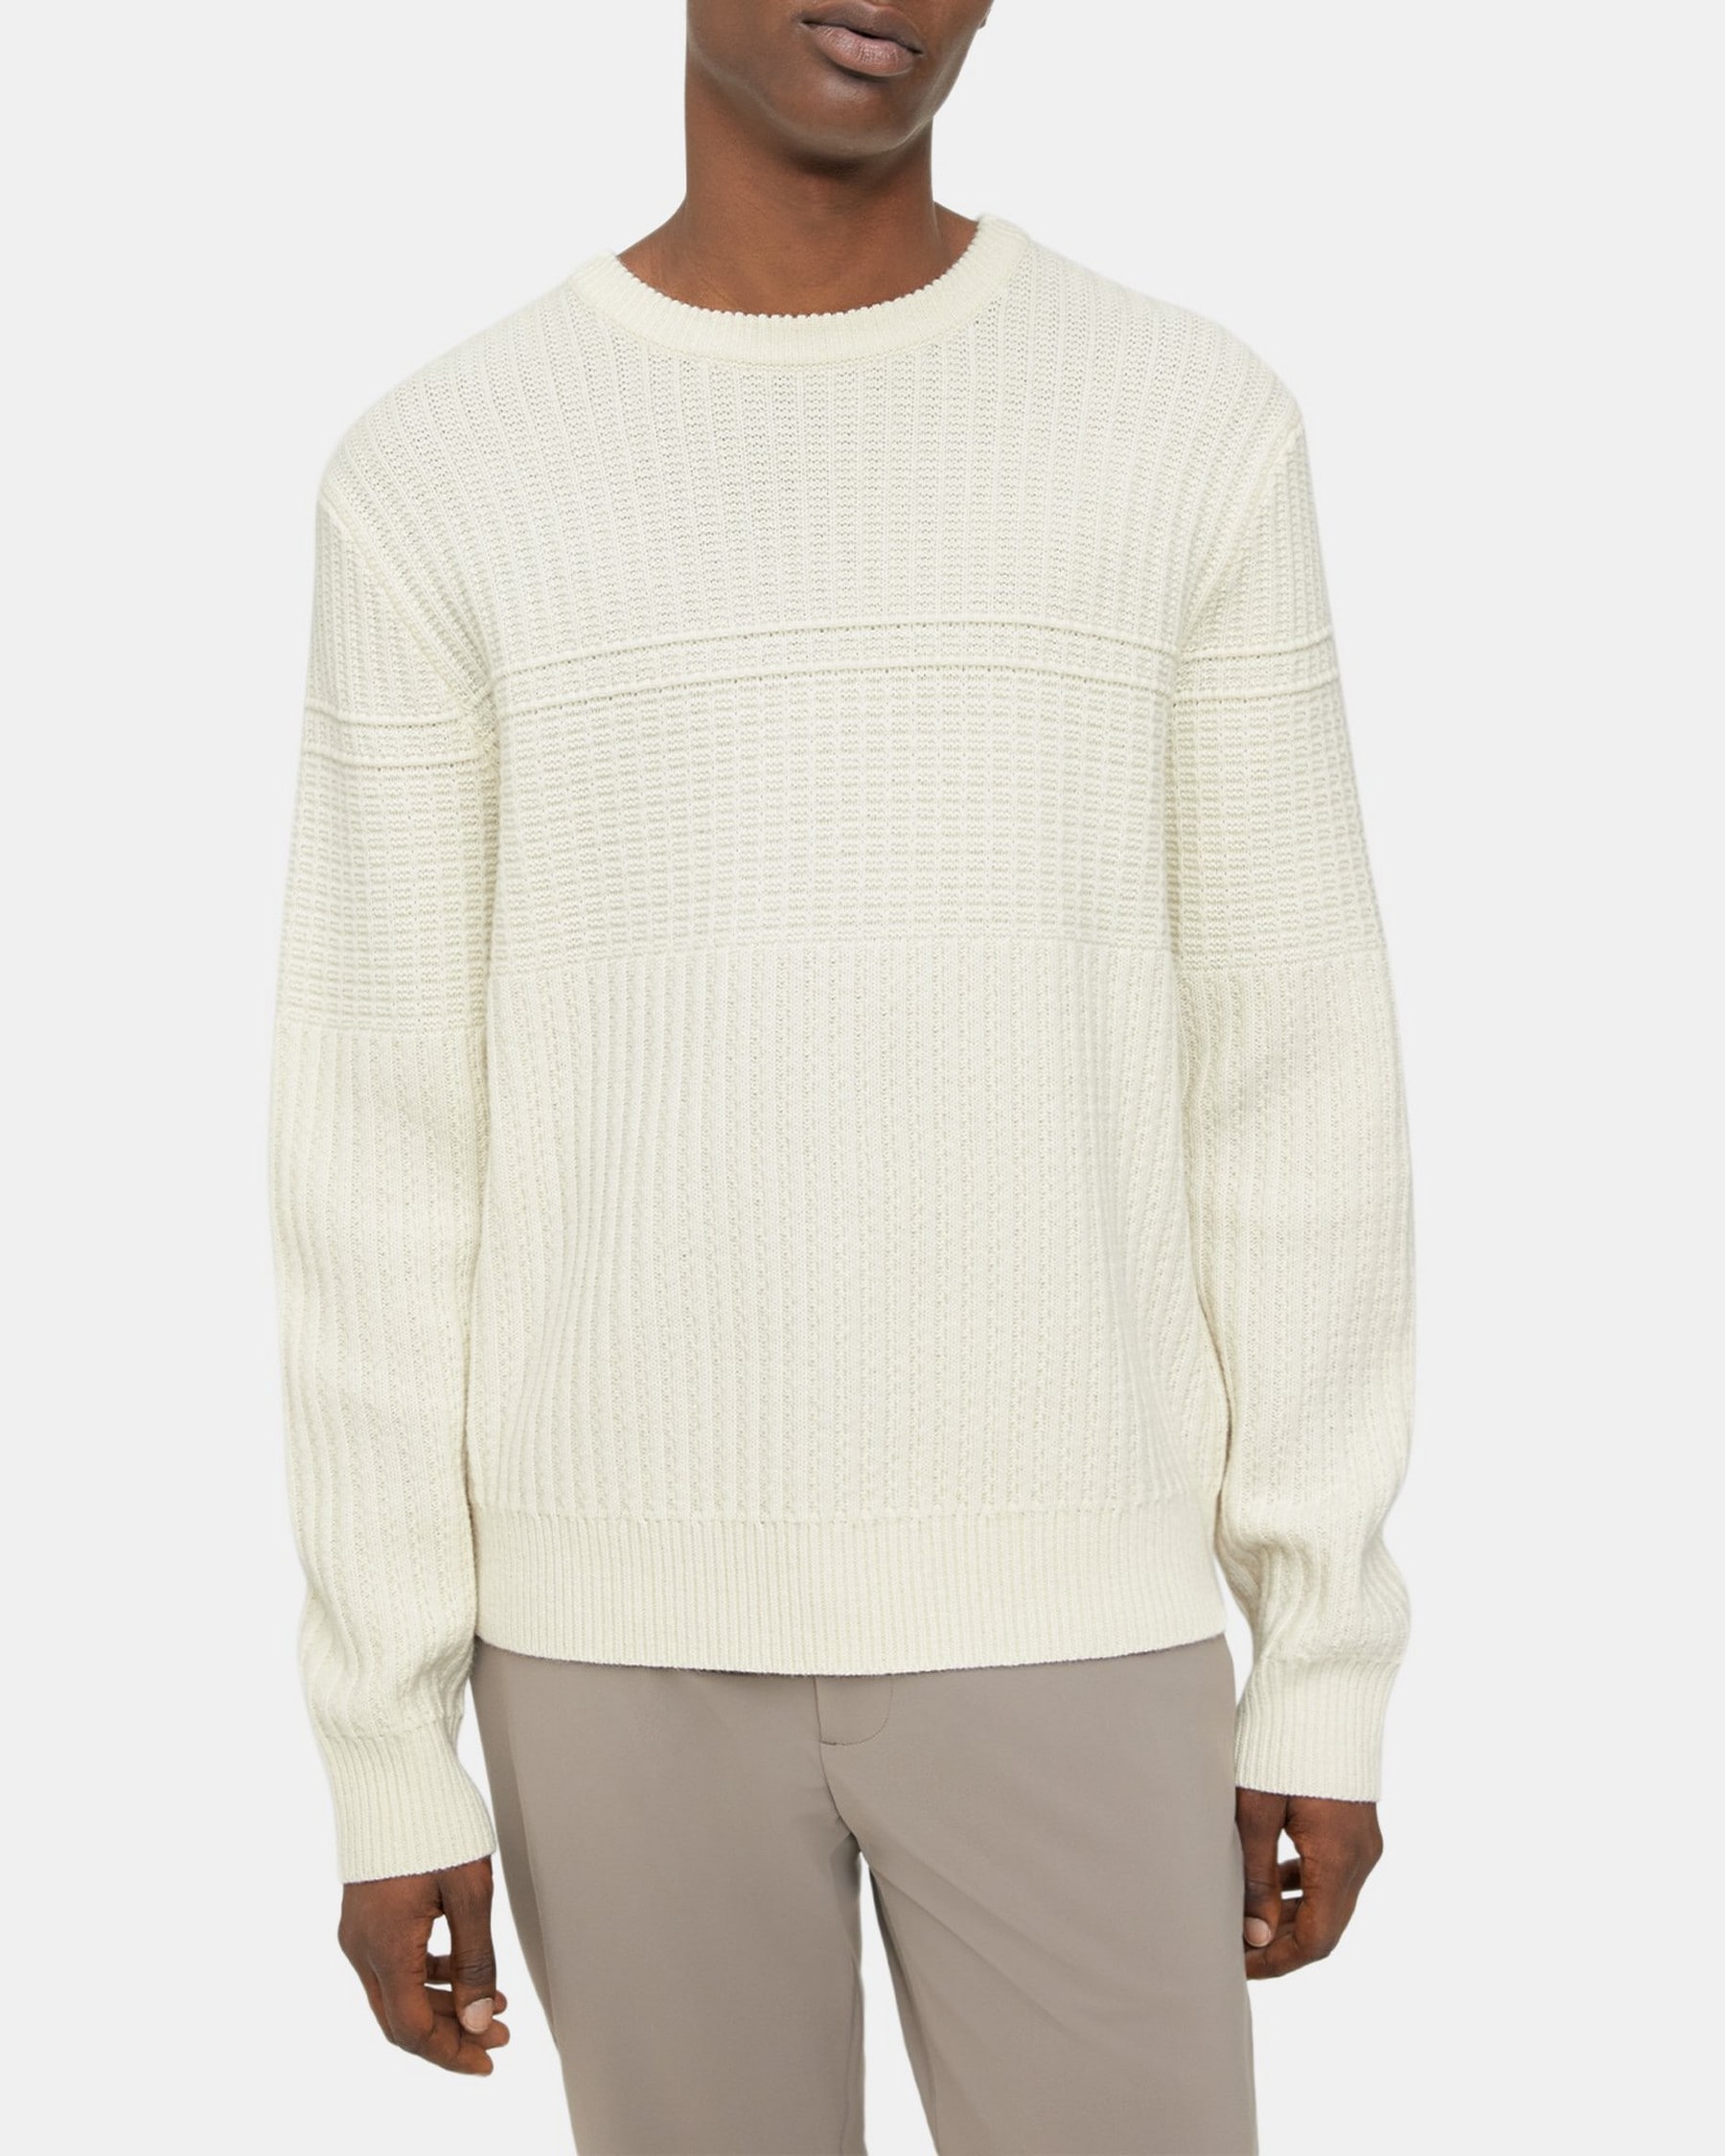 띠어리 Theory Crewneck Sweater in Wool-Cashmere,STONE WHITE